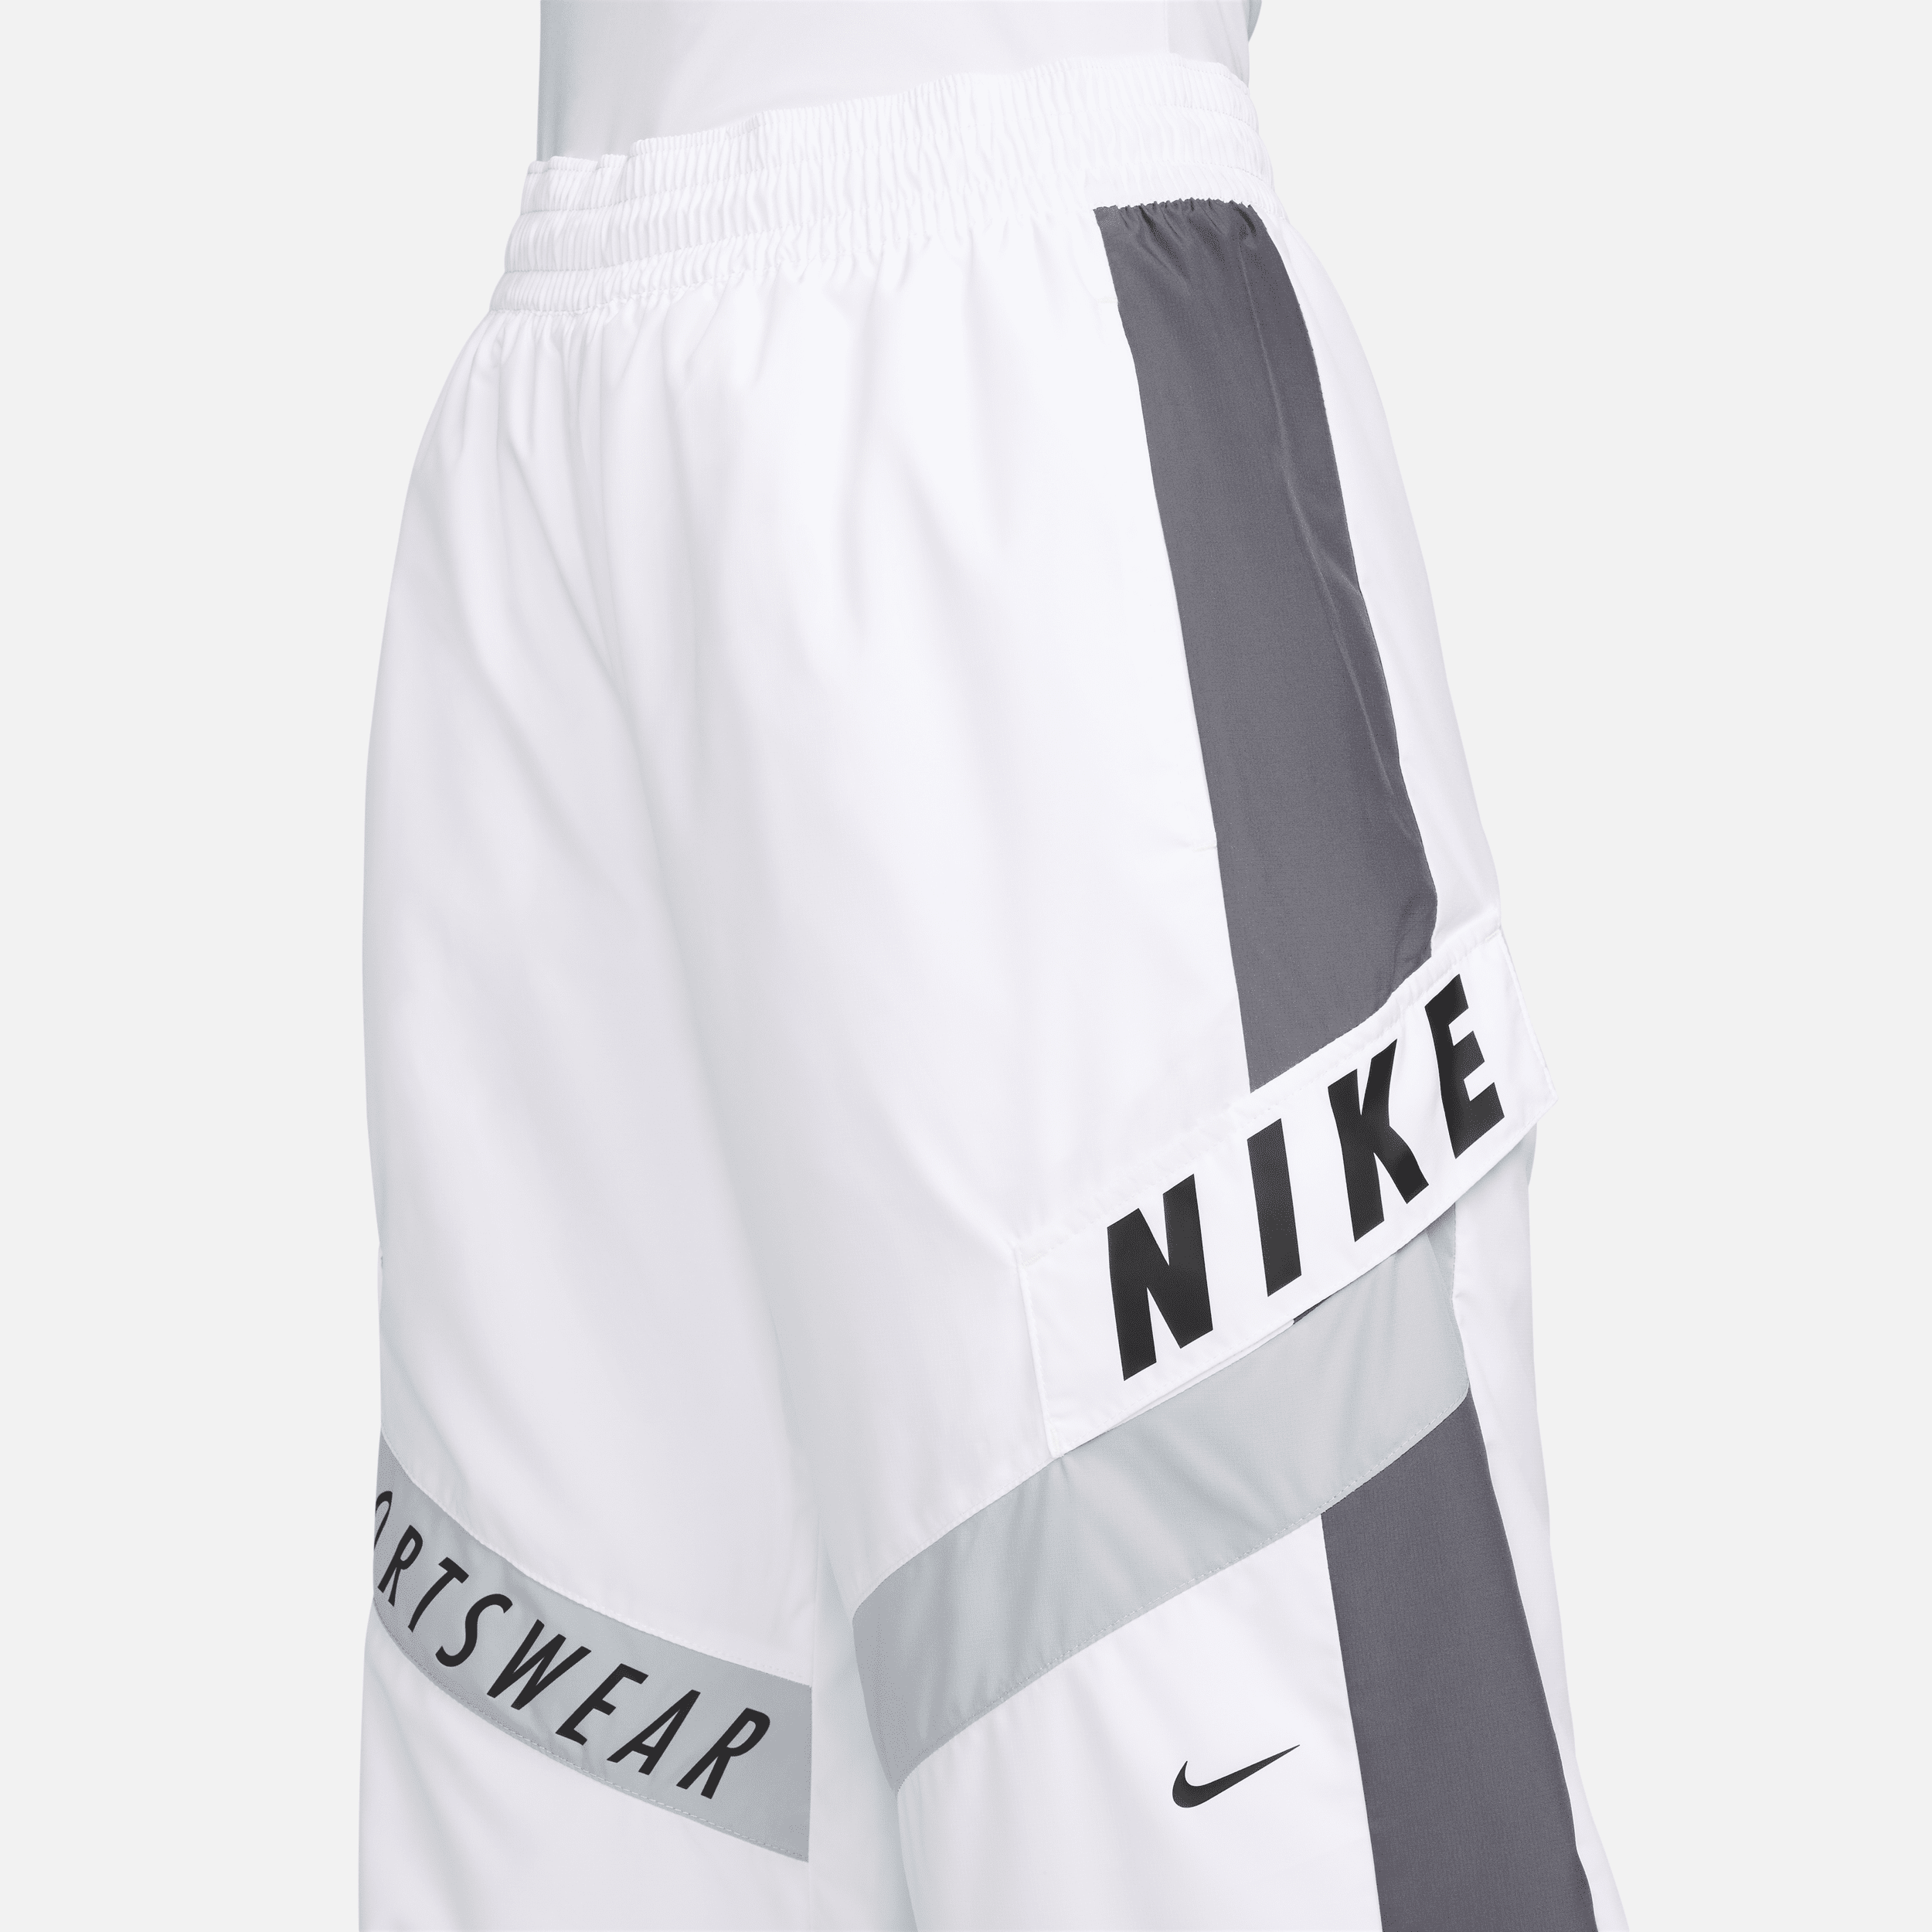 Nike Sportswear damesbroek met hoge taille Wit